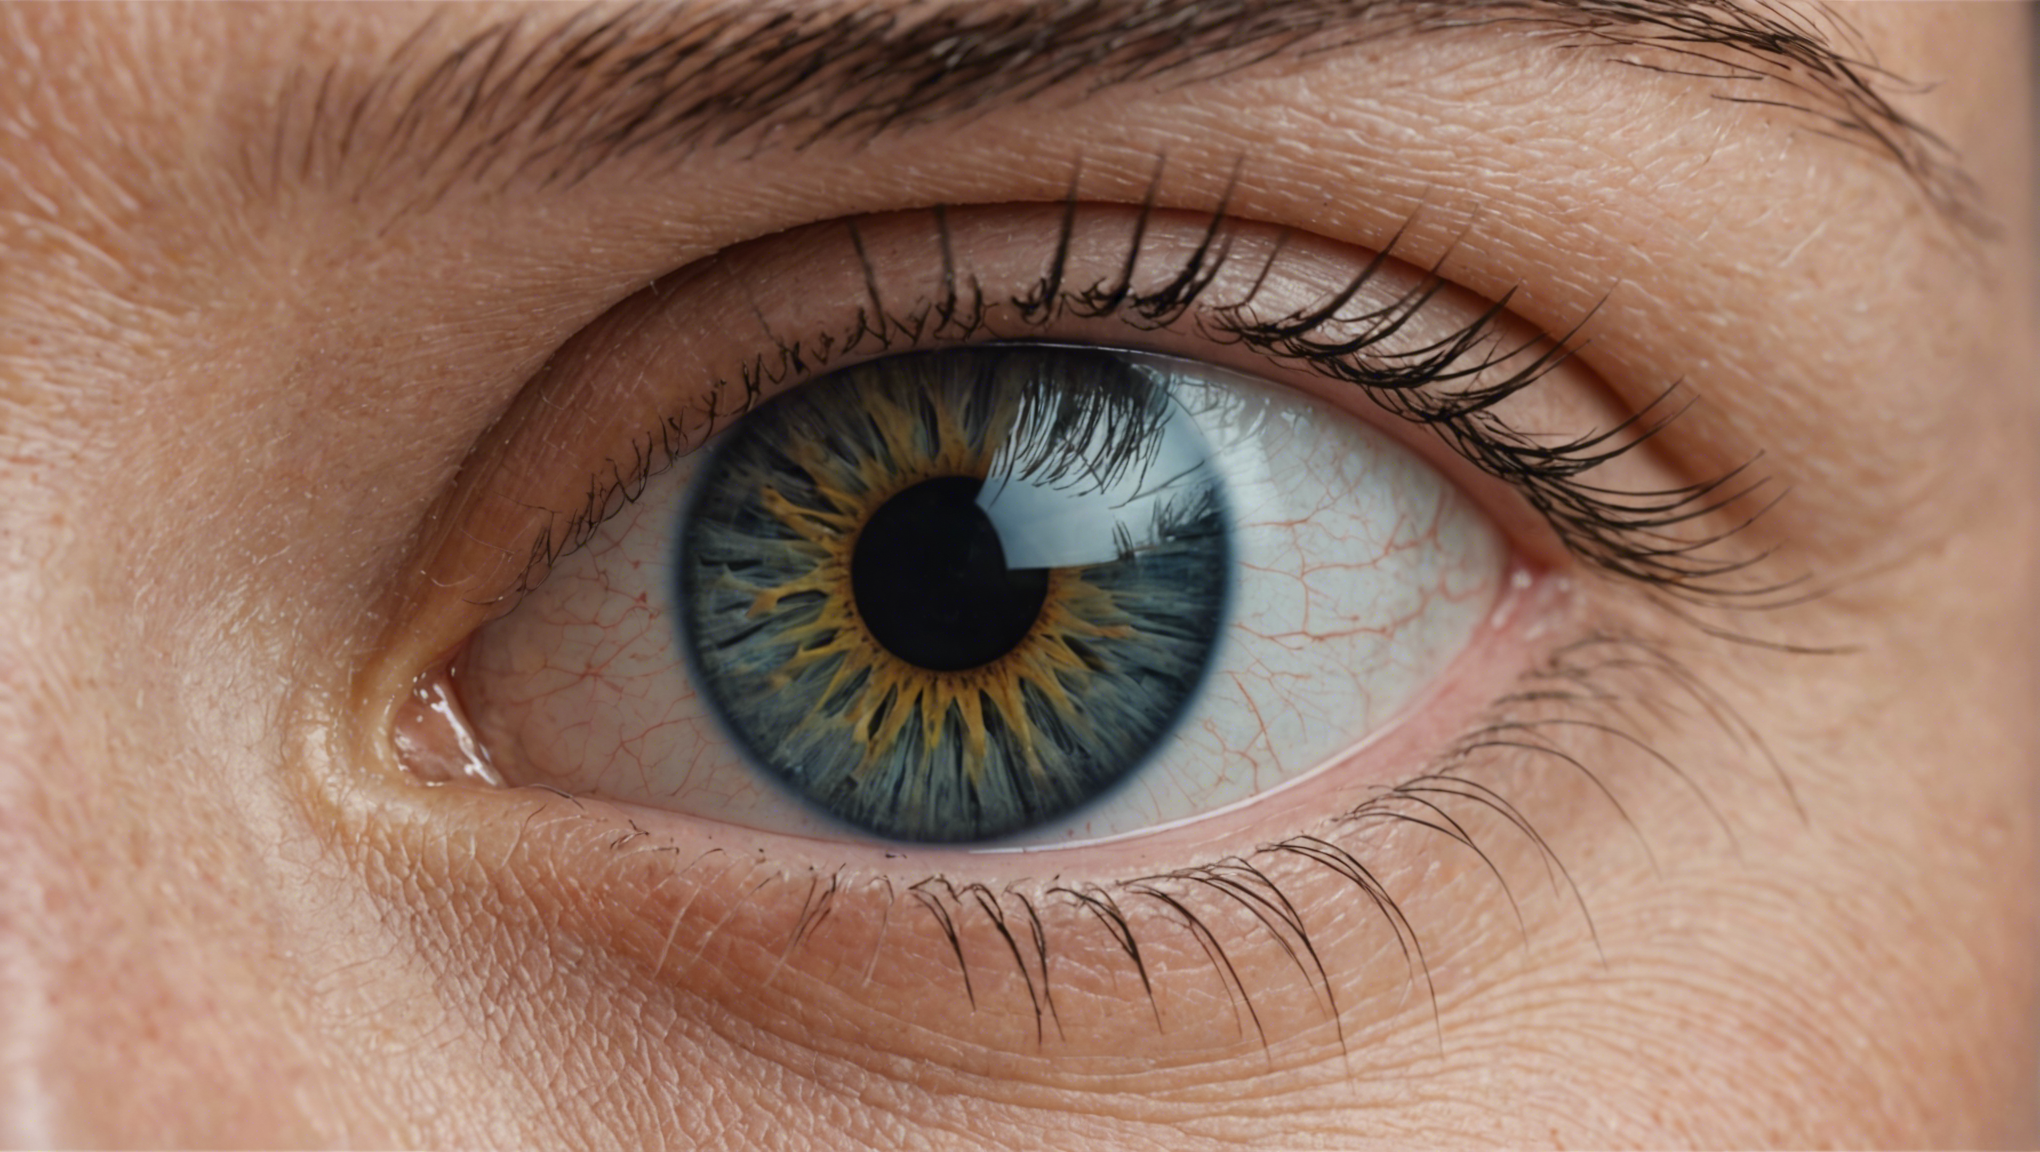 découvrez les symptômes, les causes et les traitements du glaucome. informations complètes sur cette maladie oculaire survenant généralement chez les personnes âgées.